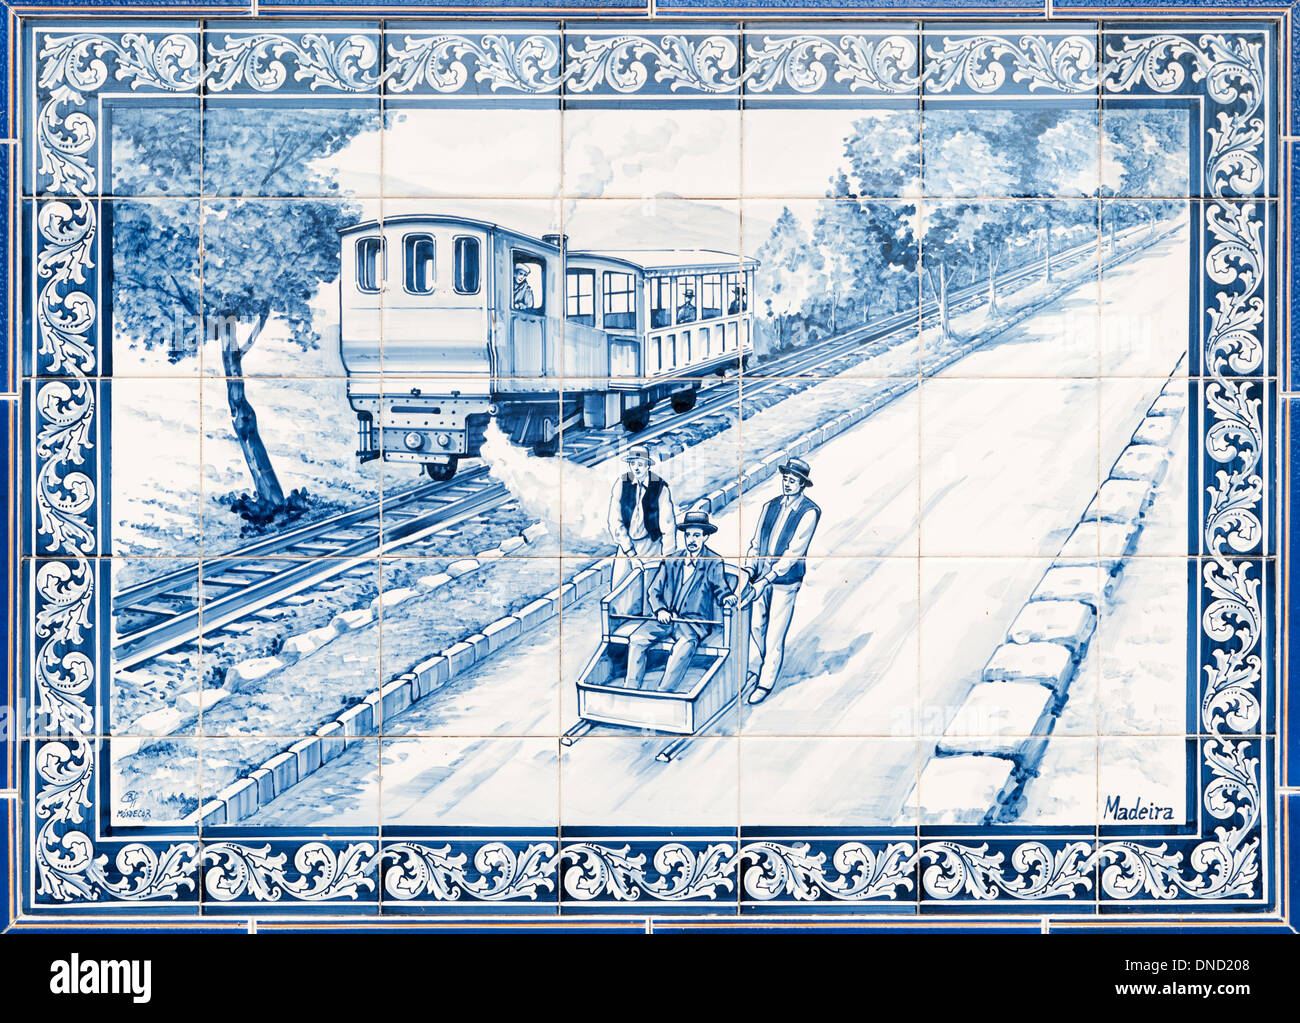 Il Portogallo, Madera, Monte. Piastrella ceramica immagine di due uomini spingendo una slitta di vimini sul Monte toboggan run con un treno dietro Foto Stock